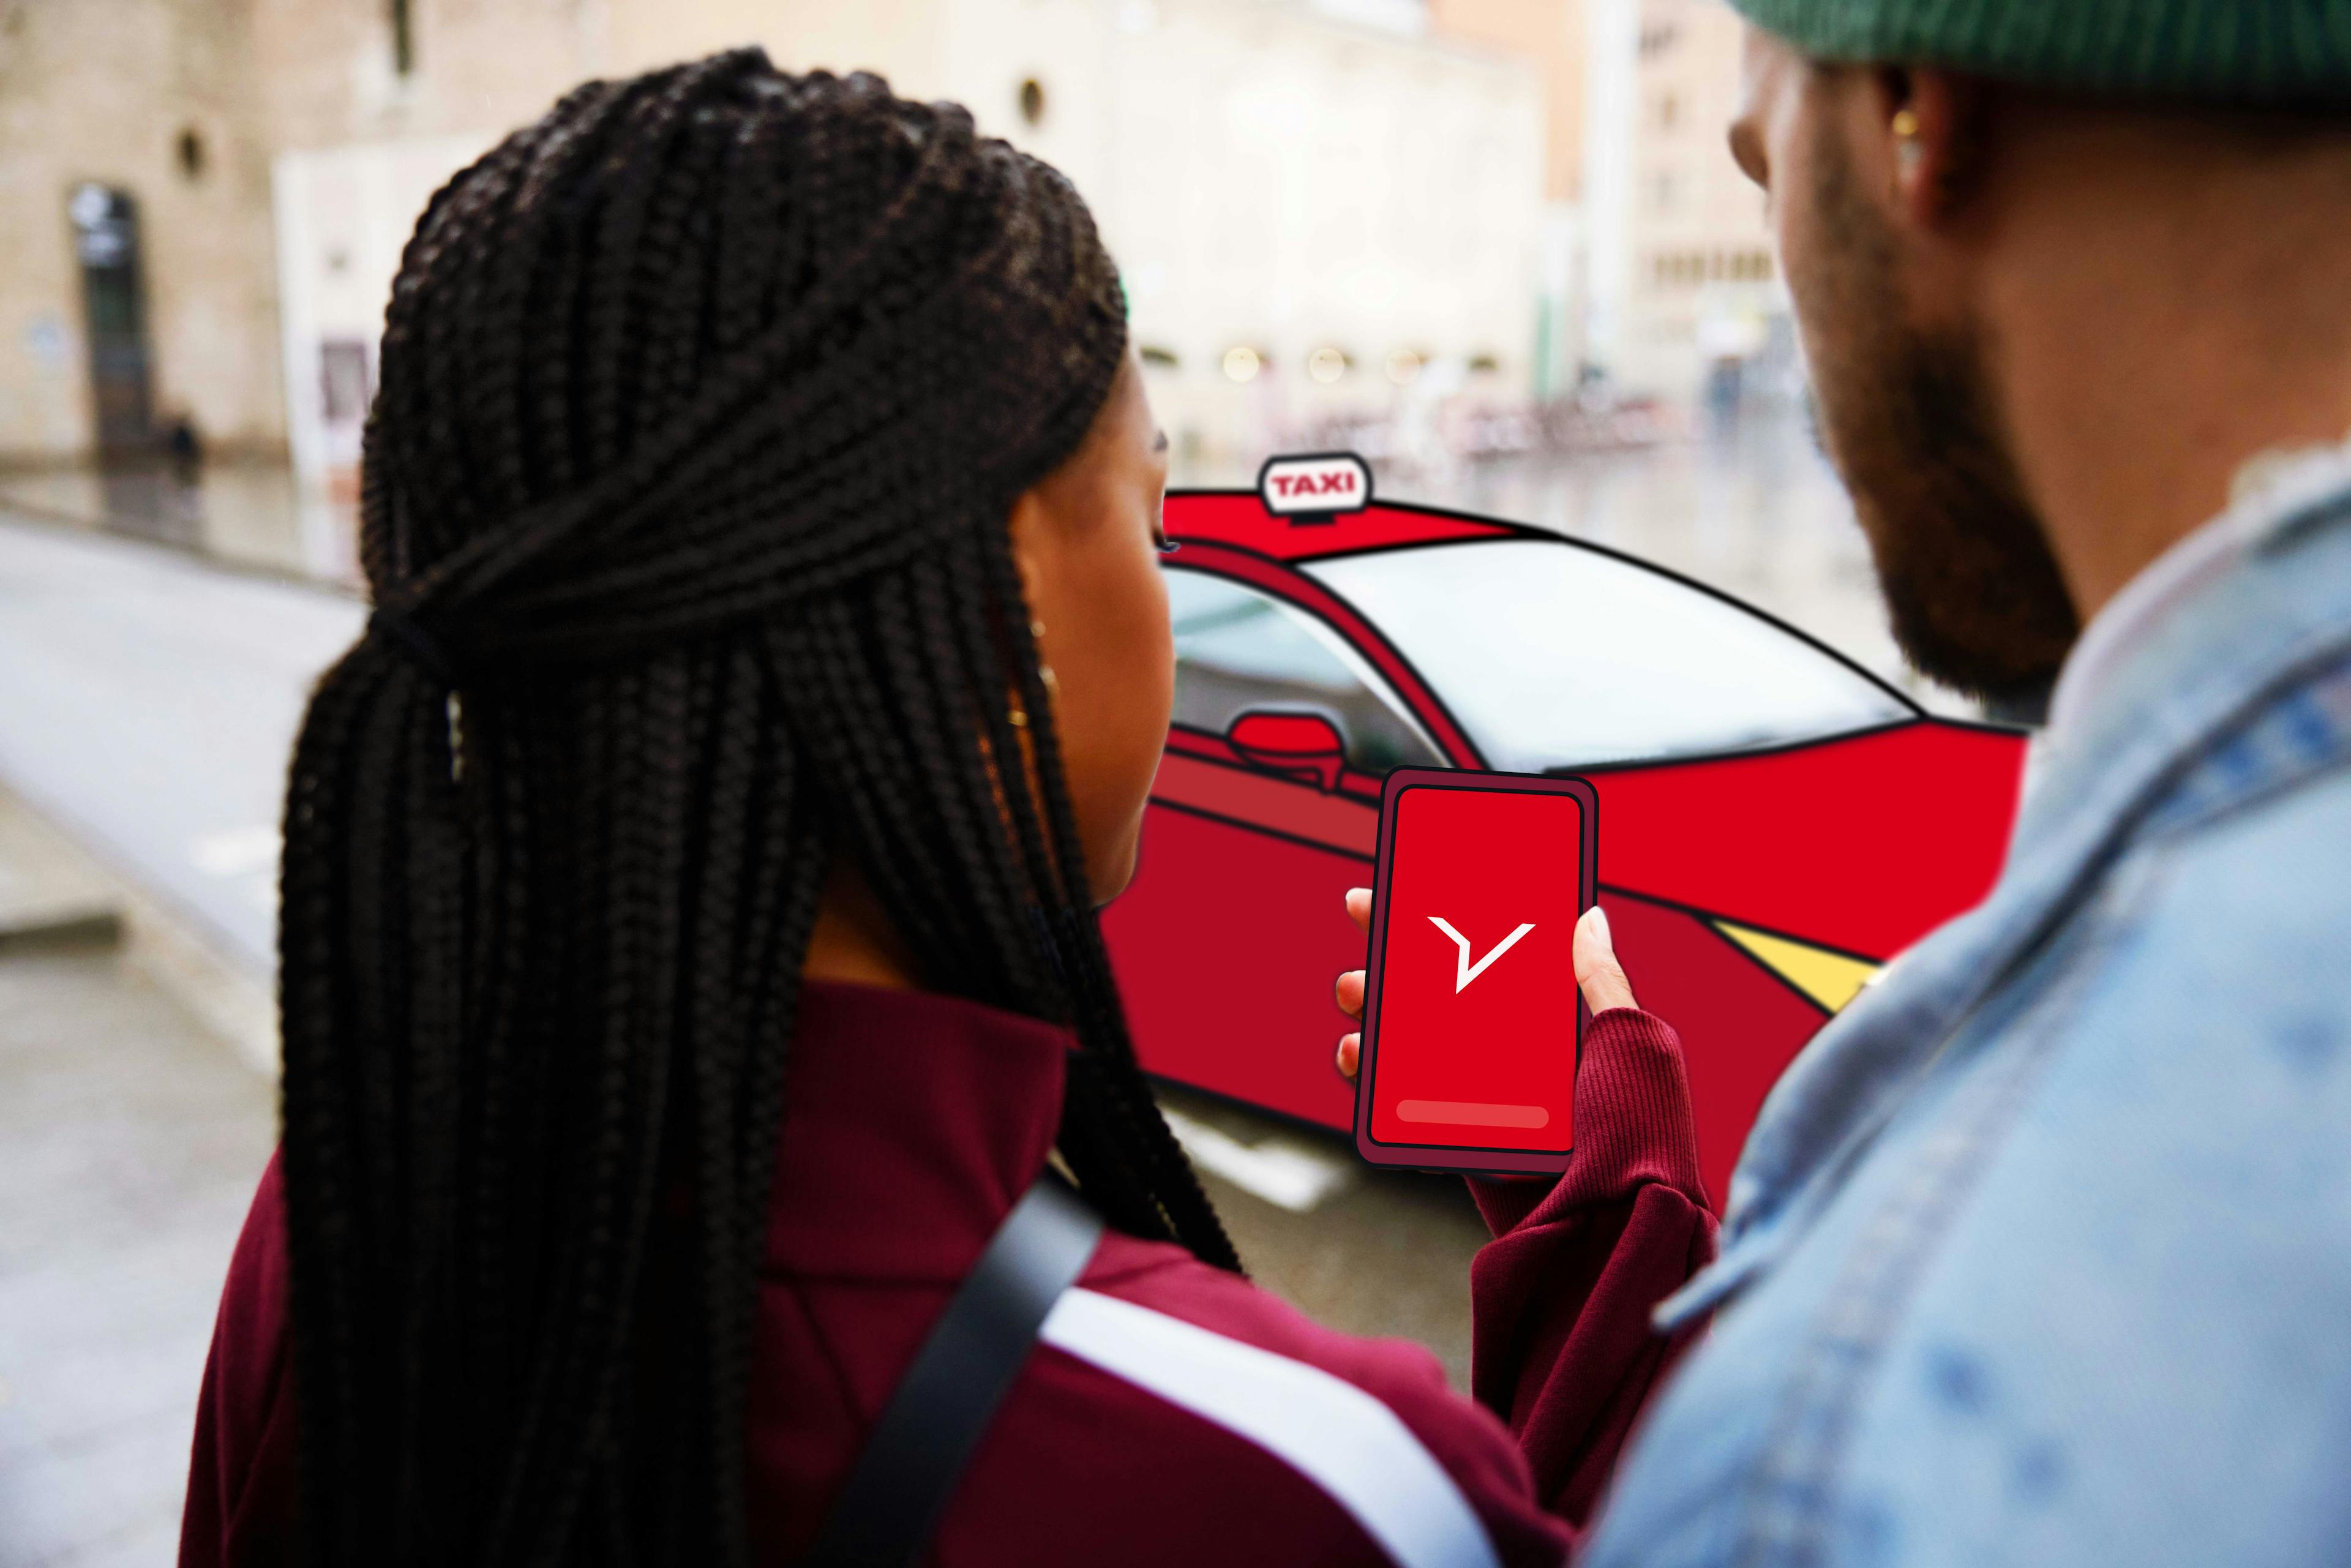 Zwei Geschäftsreisende schauen auf das Telefon mit dem FREENOW Logo, während ein rotes Taxi vorfährt